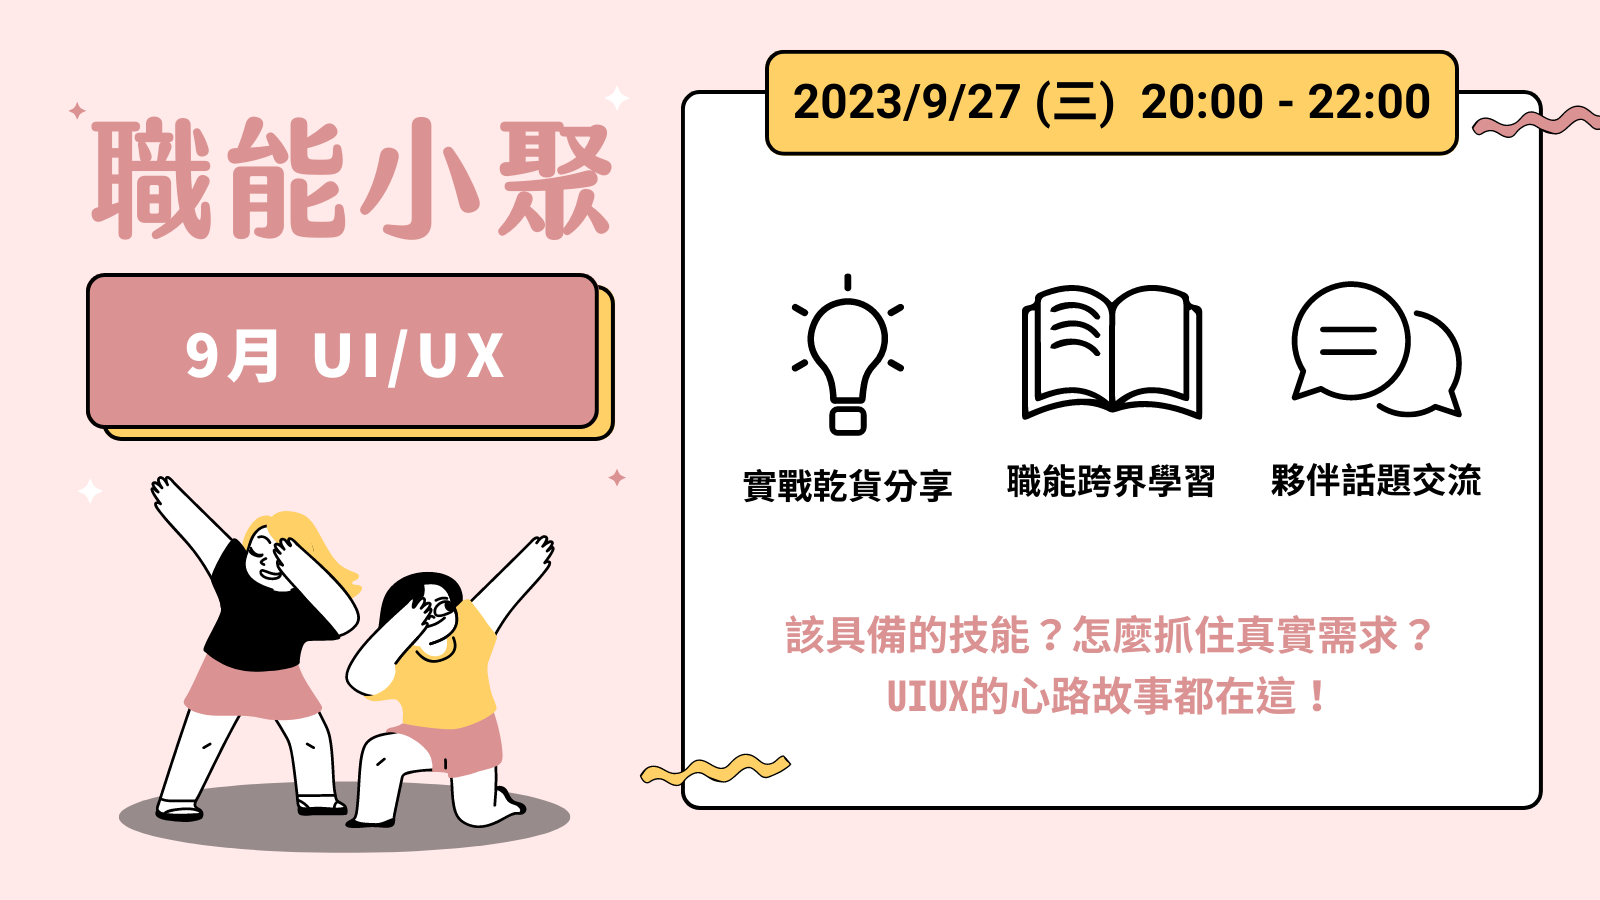 2023年 9 月職能小聚 - 9/27 UI / UX課程封面